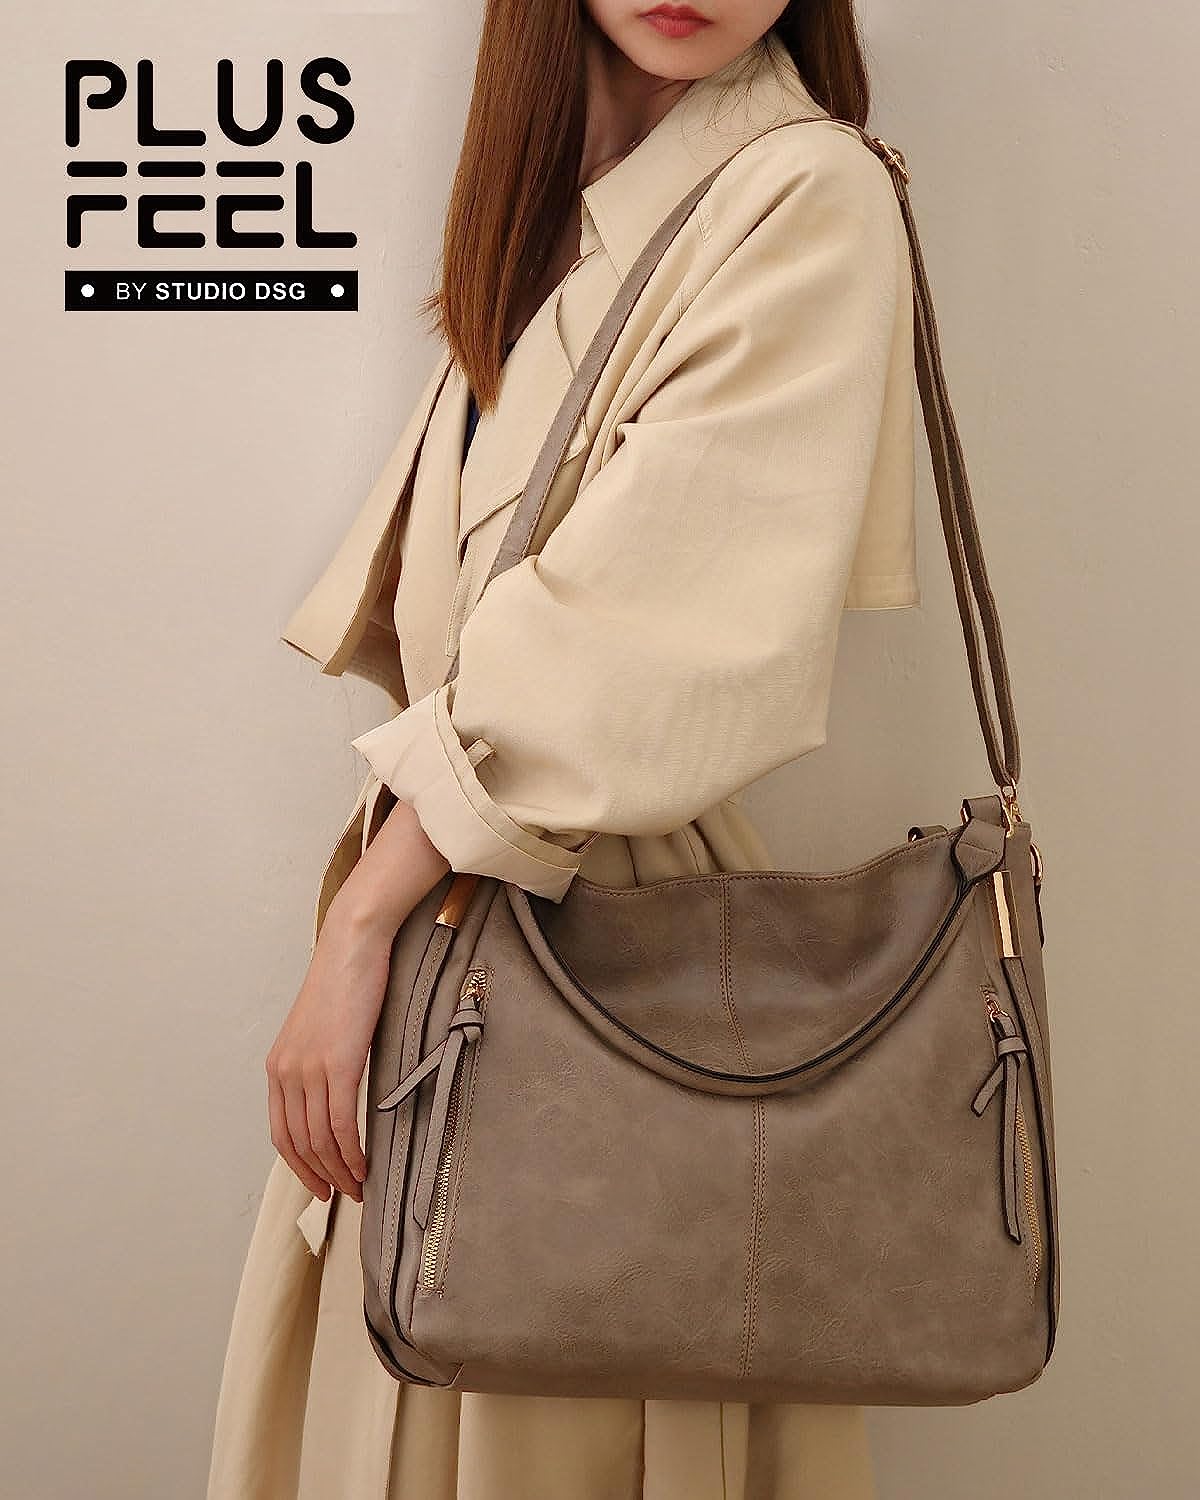 Plusfeel Purse for Women Satchel Handbags Shoulder Bag Faux Leather